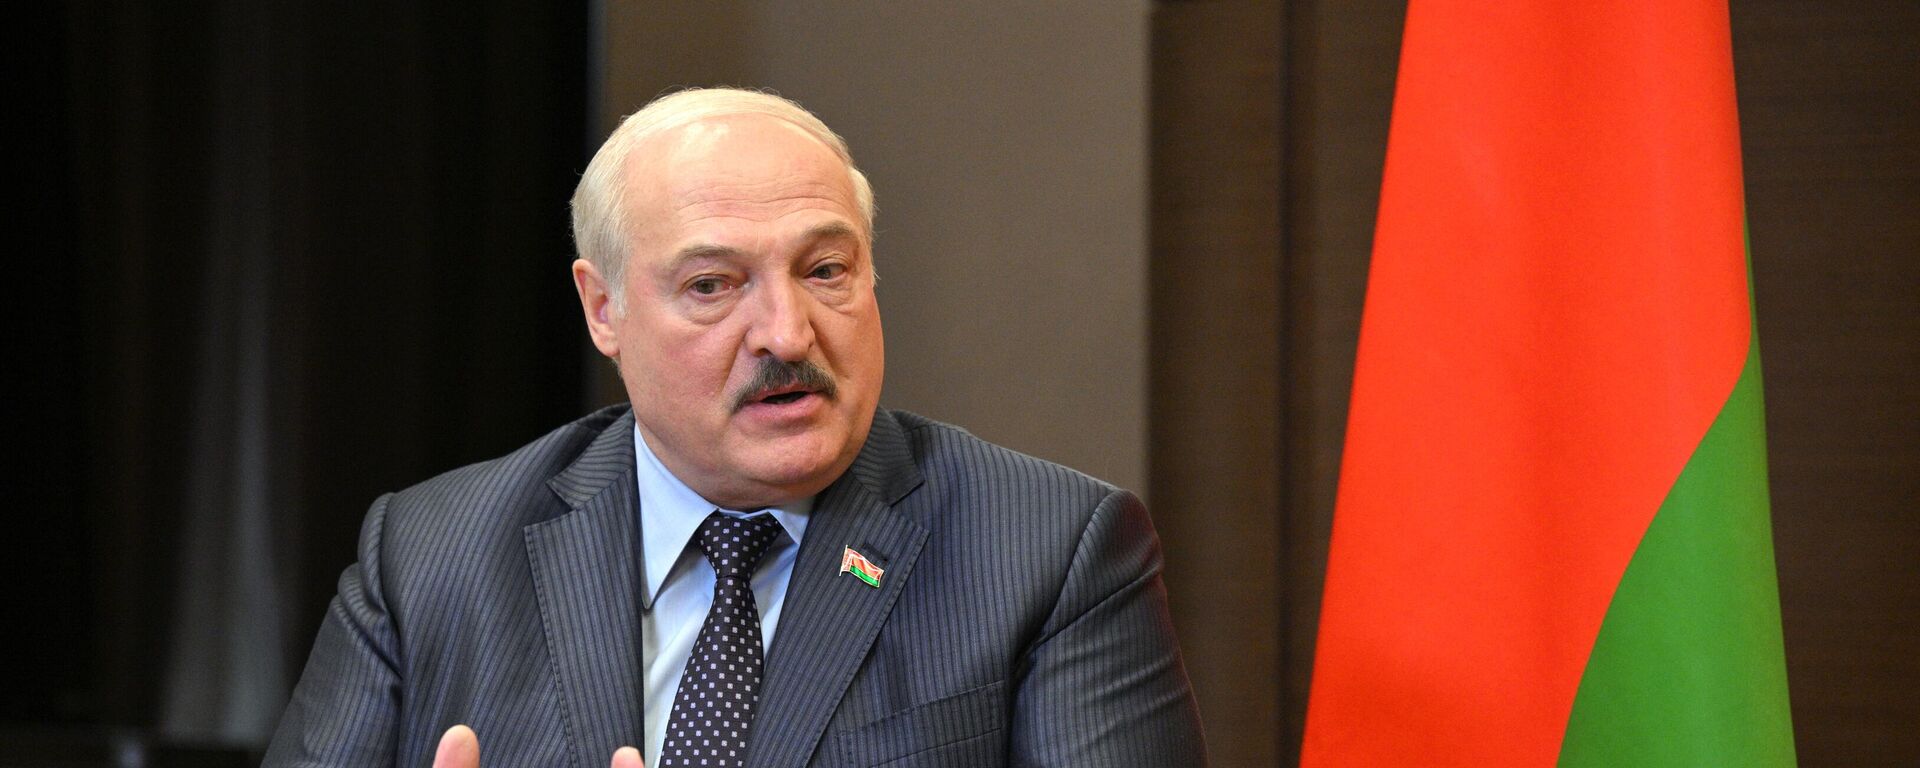  Alexandr Lukashenko, el presidente de Bielorrusia - Sputnik Mundo, 1920, 02.07.2022